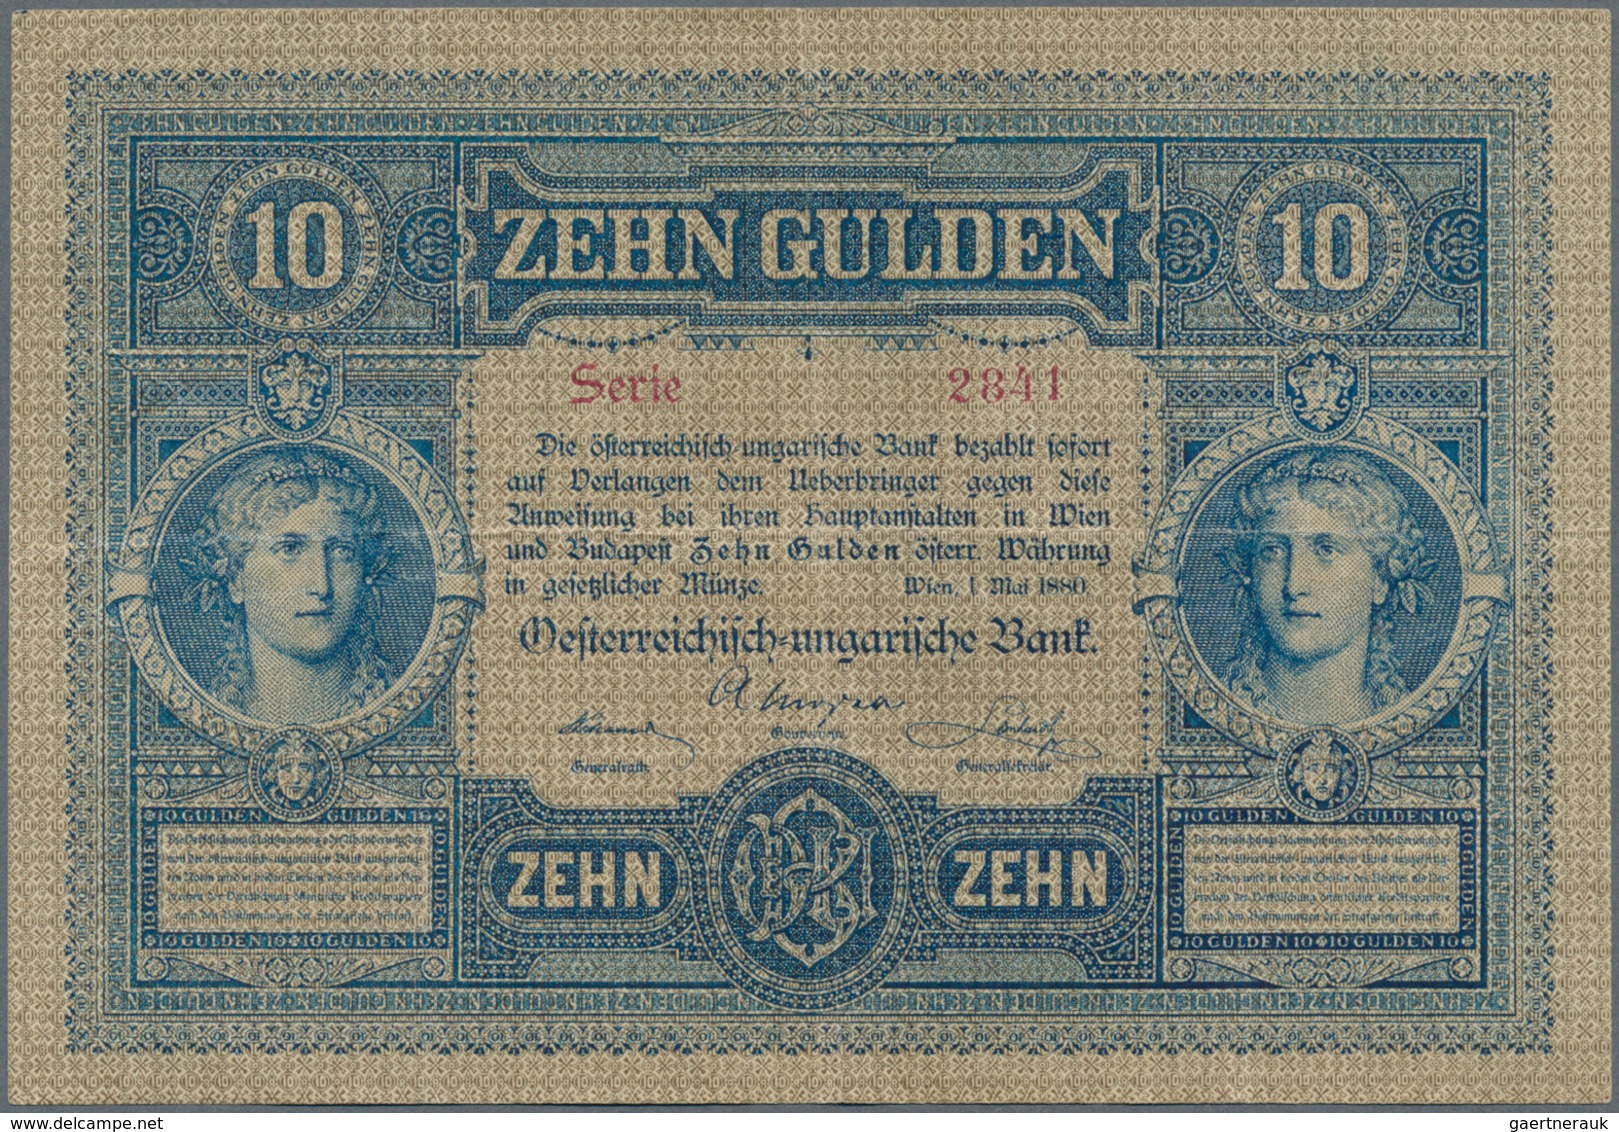 Austria / Österreich: 10 Gulden 1880 P. 1, S/N 023887, Rare Note In Nice Condition With Some Vertica - Oostenrijk